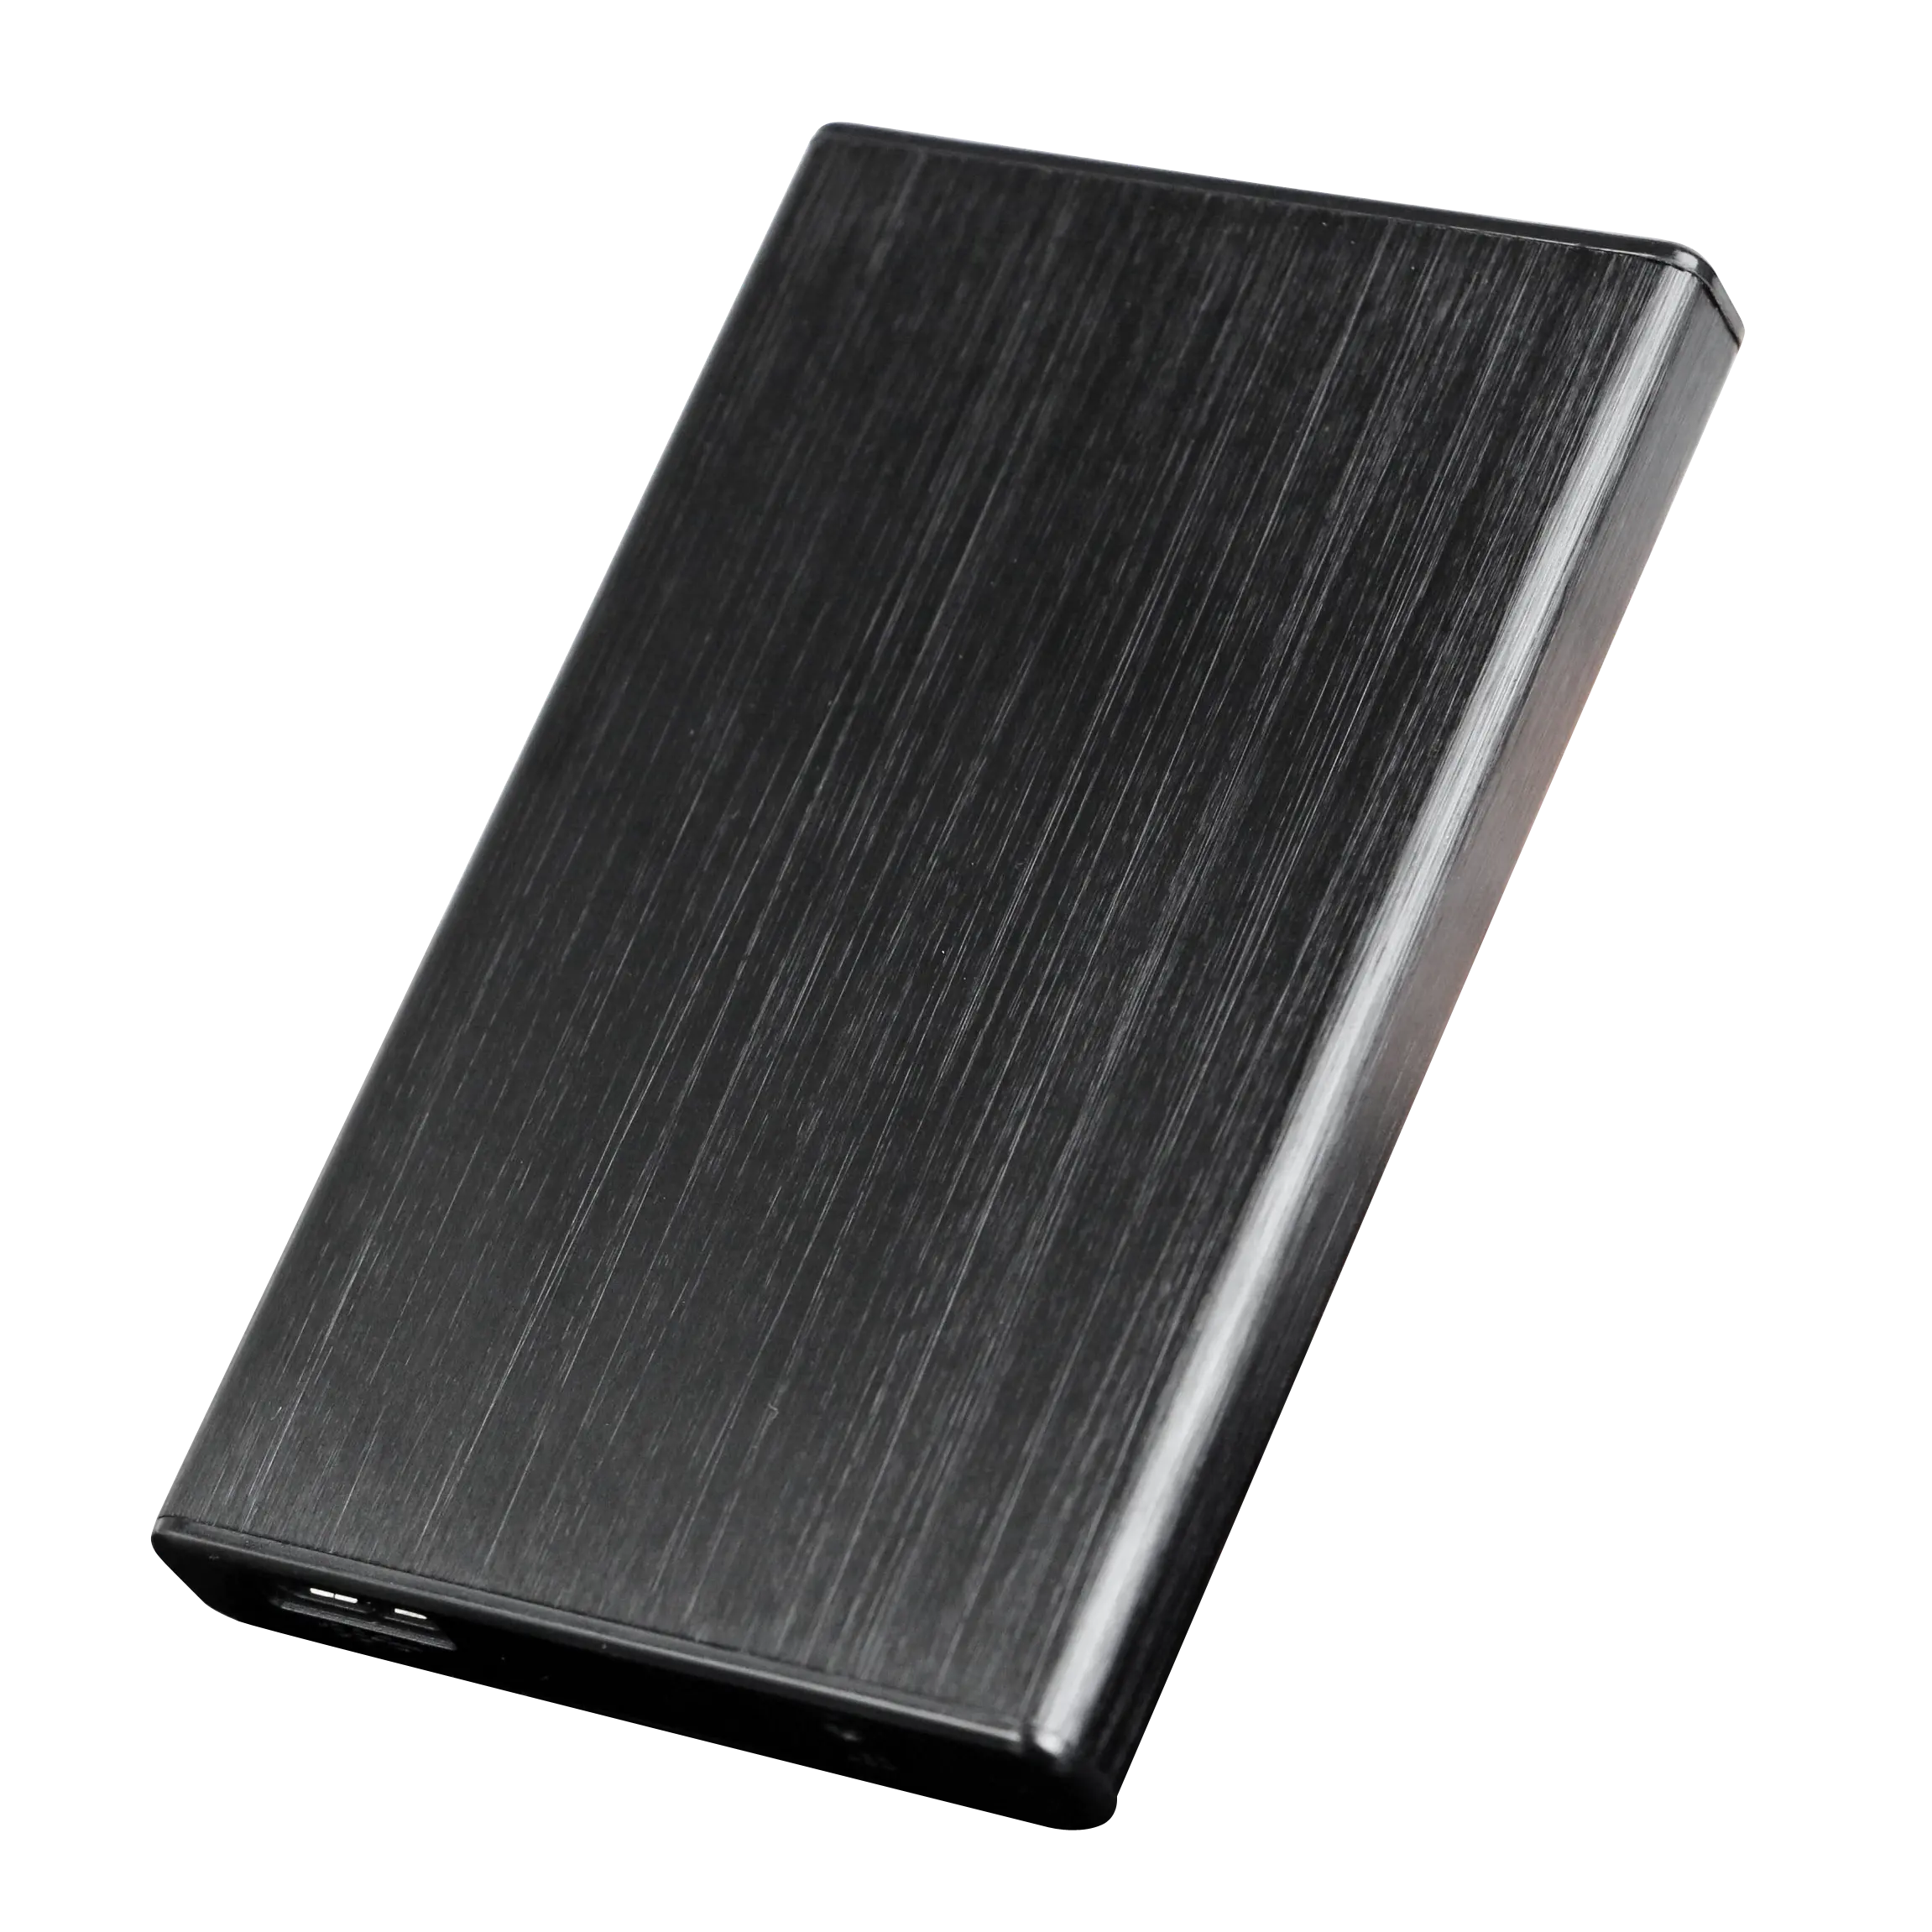 İnce 2.5 "Usb 3.0 sabit Disk muhafaza Sata harici Macbook çantası harici alüminyum Sata Hdd kutusu 2.5 sabit Disk muhafazası